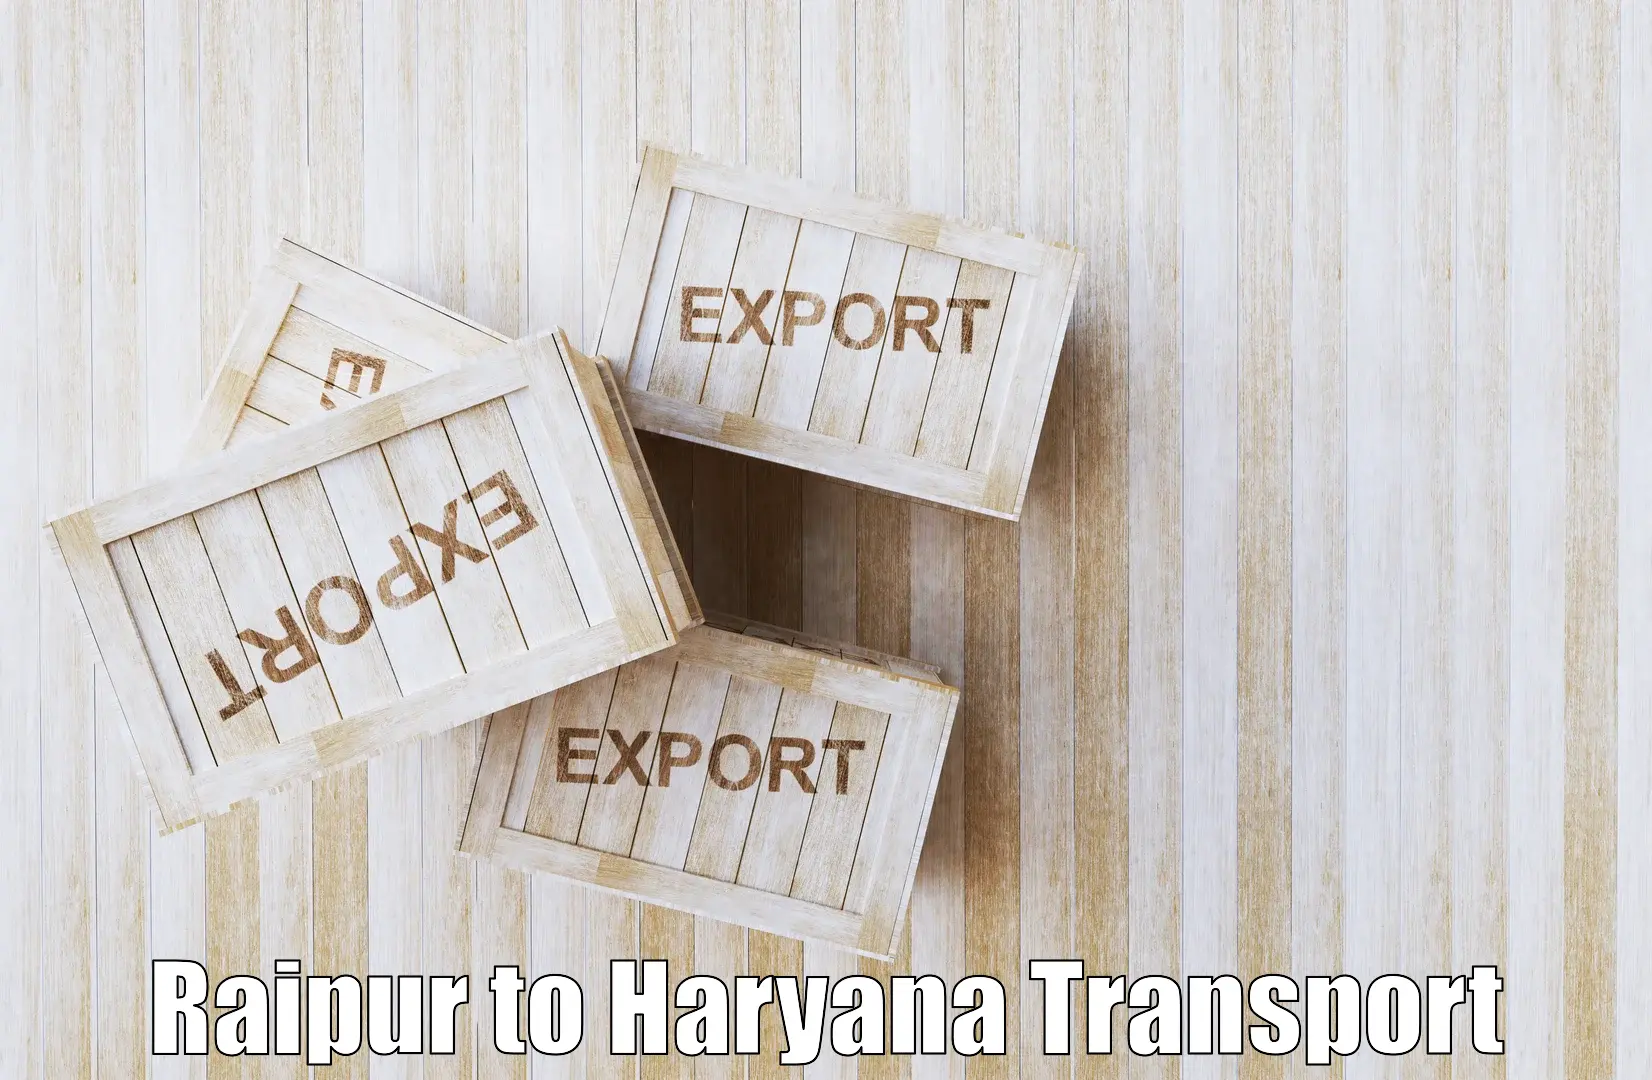 Daily parcel service transport Raipur to Yamuna Nagar